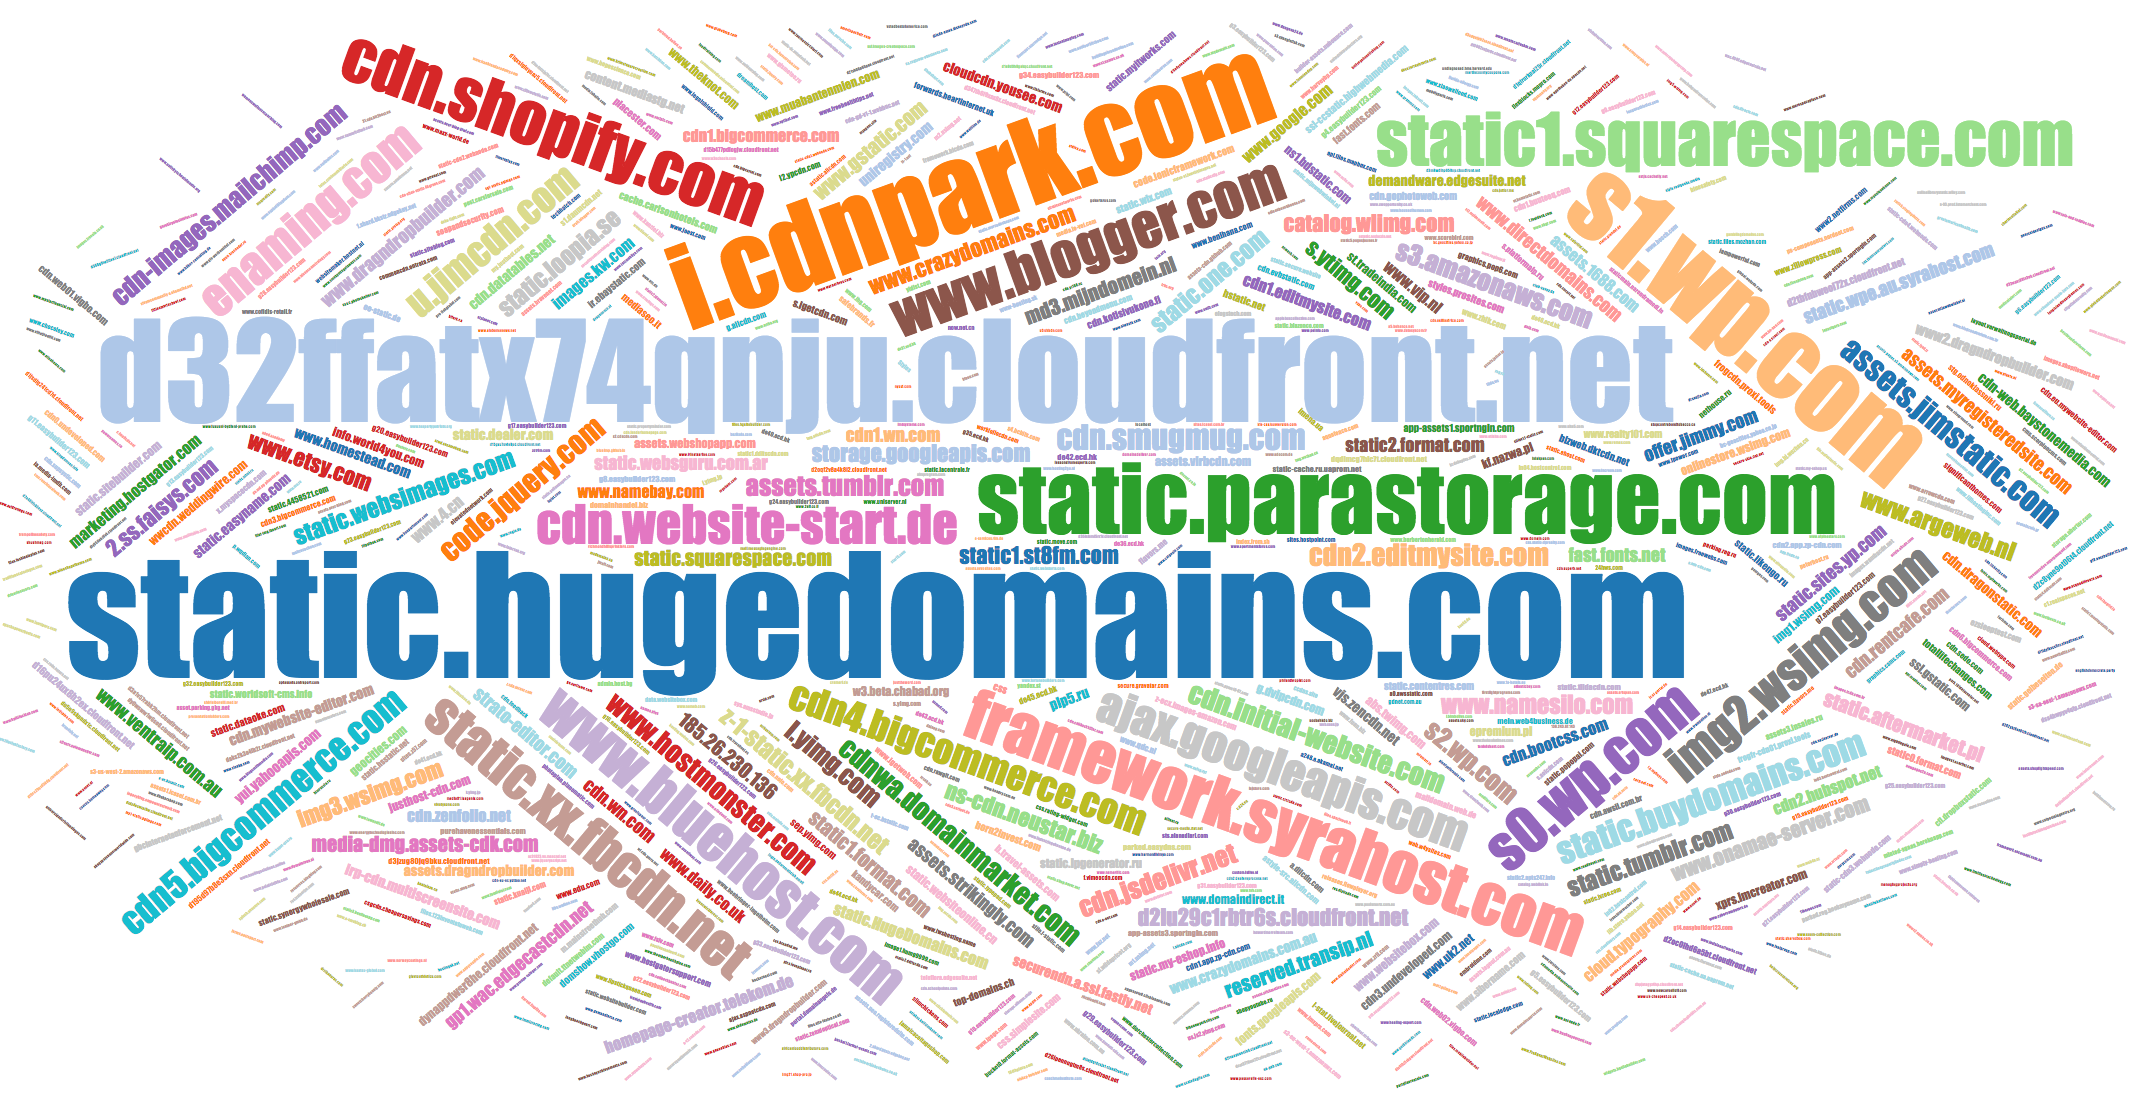 Popular names of CSS domains static1.squarespace.com, s1.wp.com, etc.